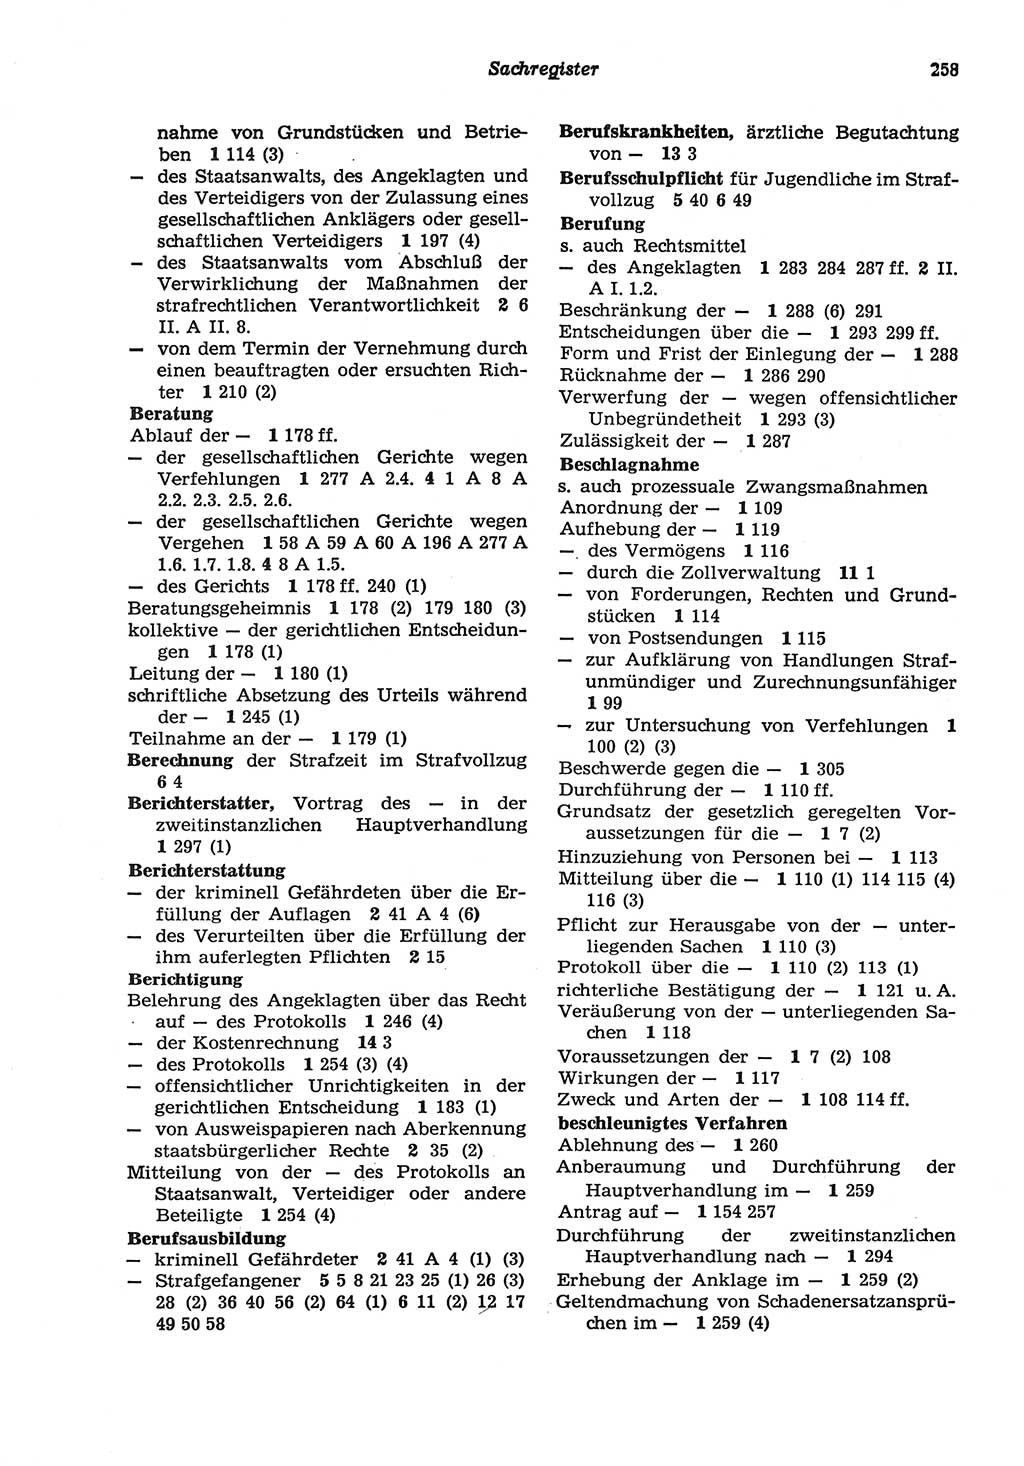 Strafprozeßordnung (StPO) der Deutschen Demokratischen Republik (DDR) sowie angrenzende Gesetze und Bestimmungen 1977, Seite 258 (StPO DDR Ges. Best. 1977, S. 258)